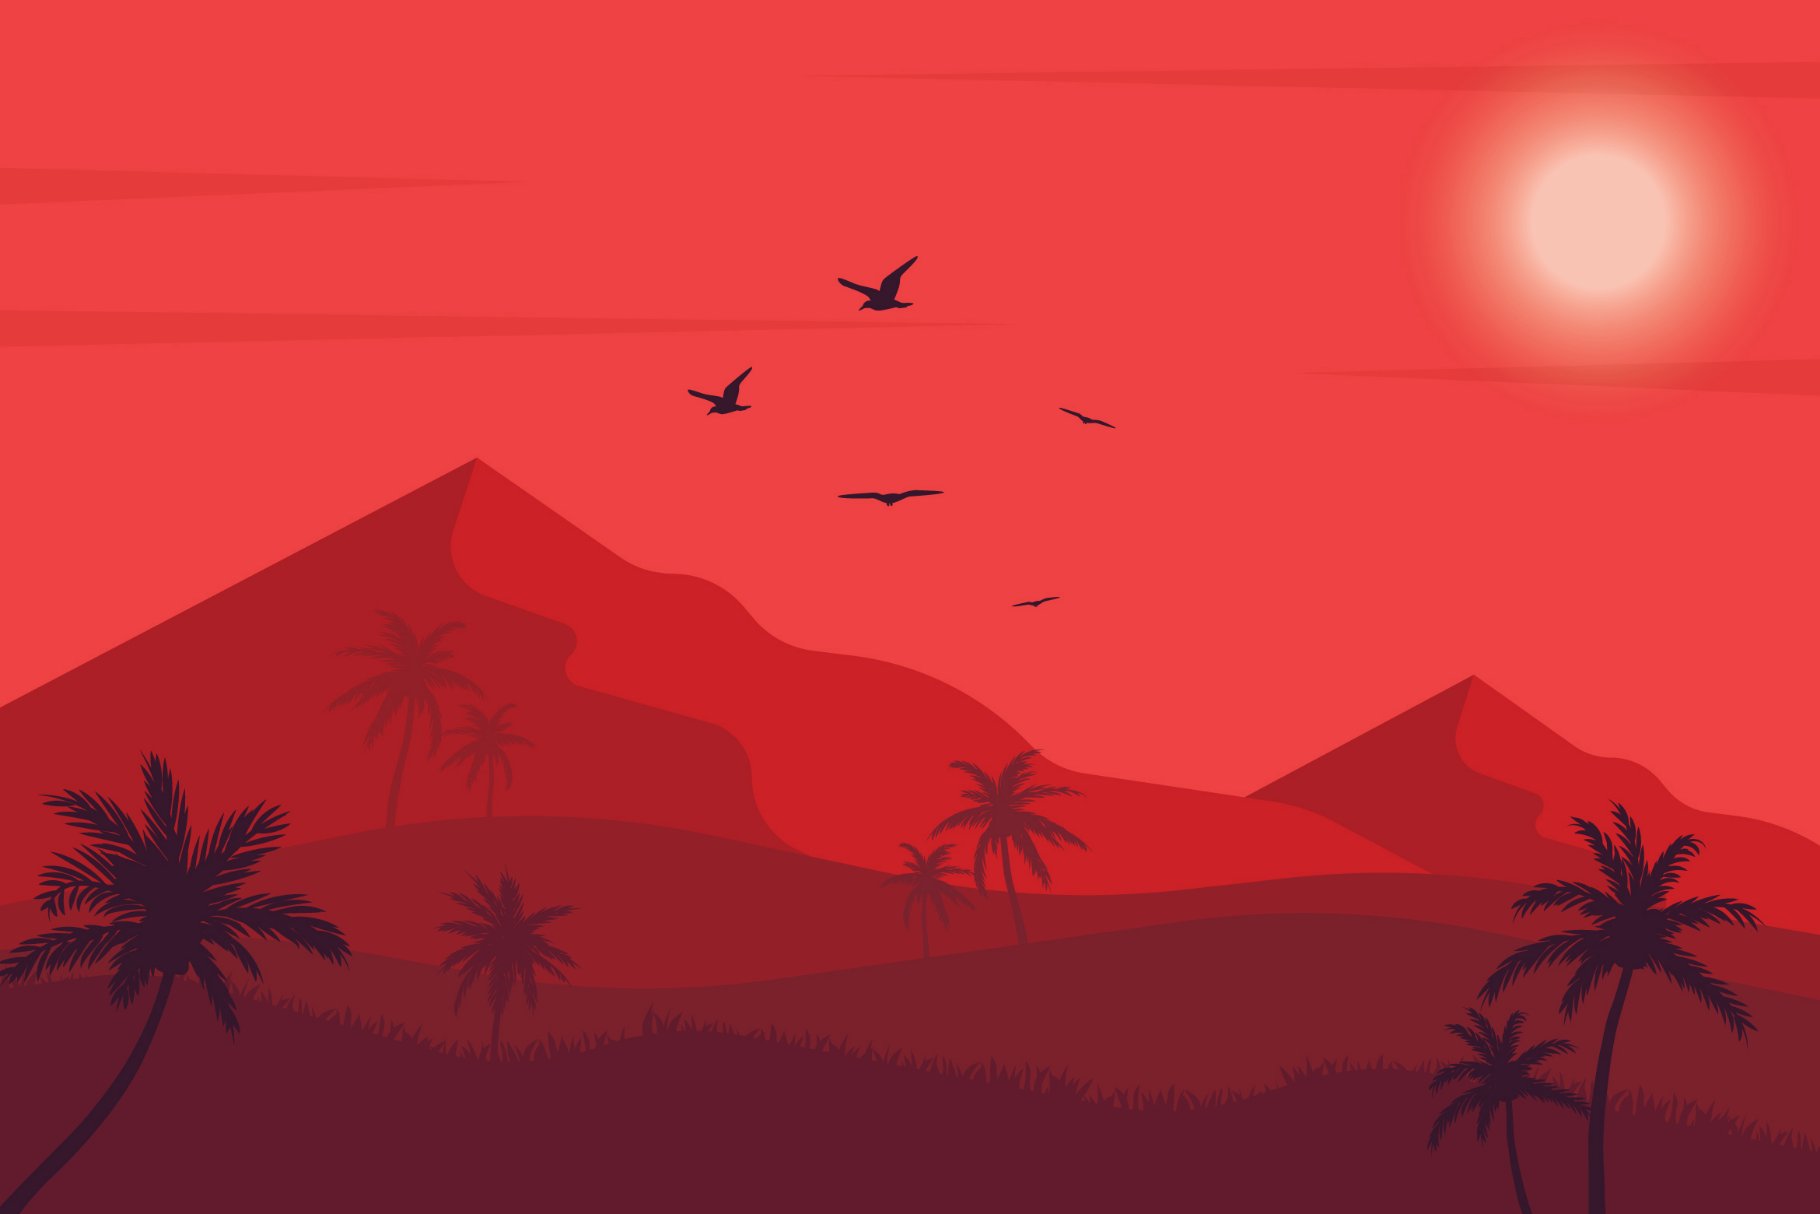 Desert Sunset-Landscape Illustration cover image.